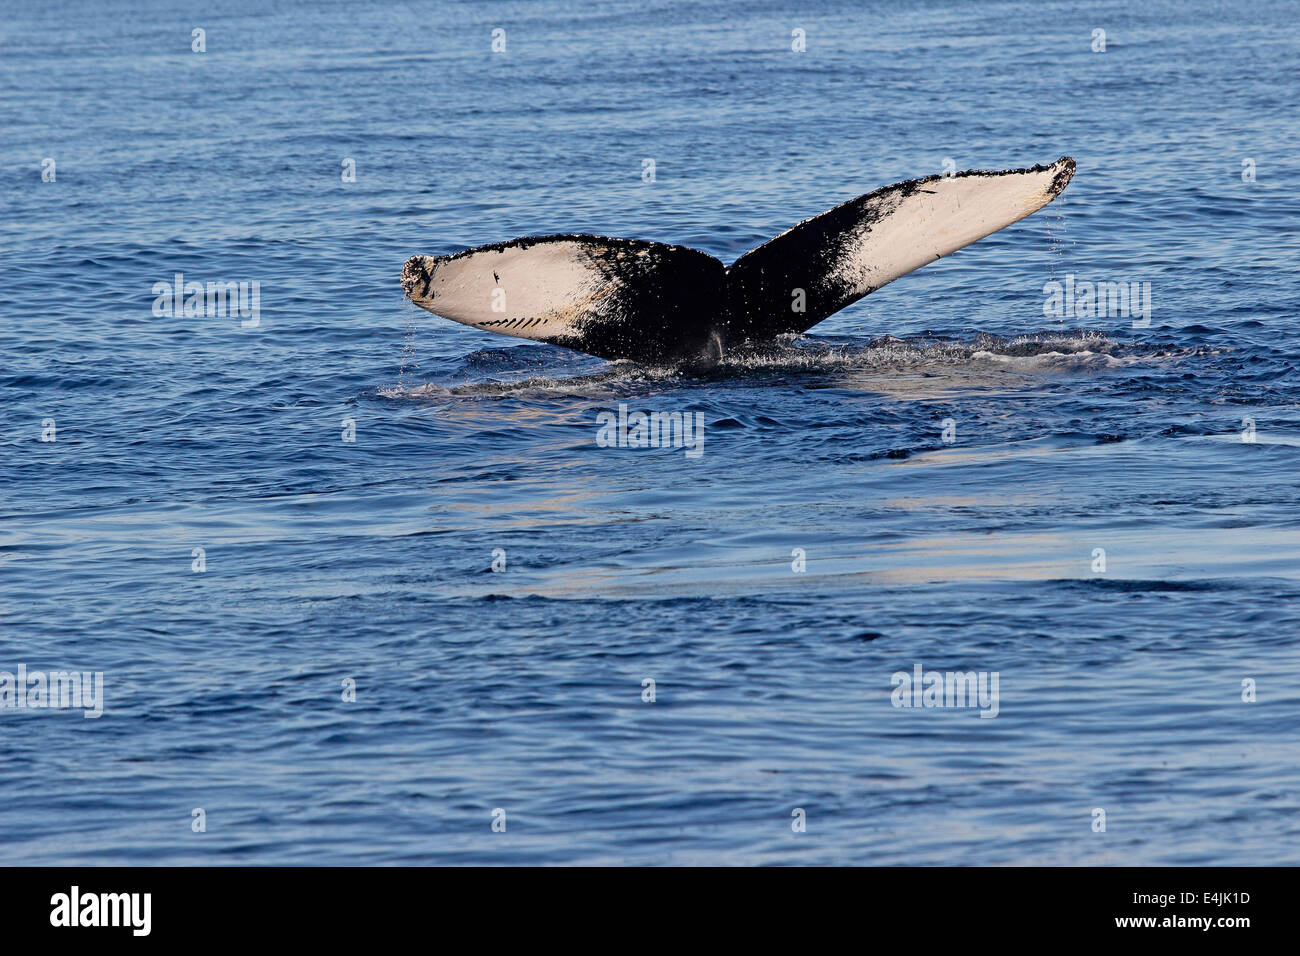 Baleine à bosse (Megaptera novaeangliae) rupture d'alimentation banc Stellwagen Provincetown dans le Massachusetts Cape Cod MA Nouvelle Angleterre Banque D'Images